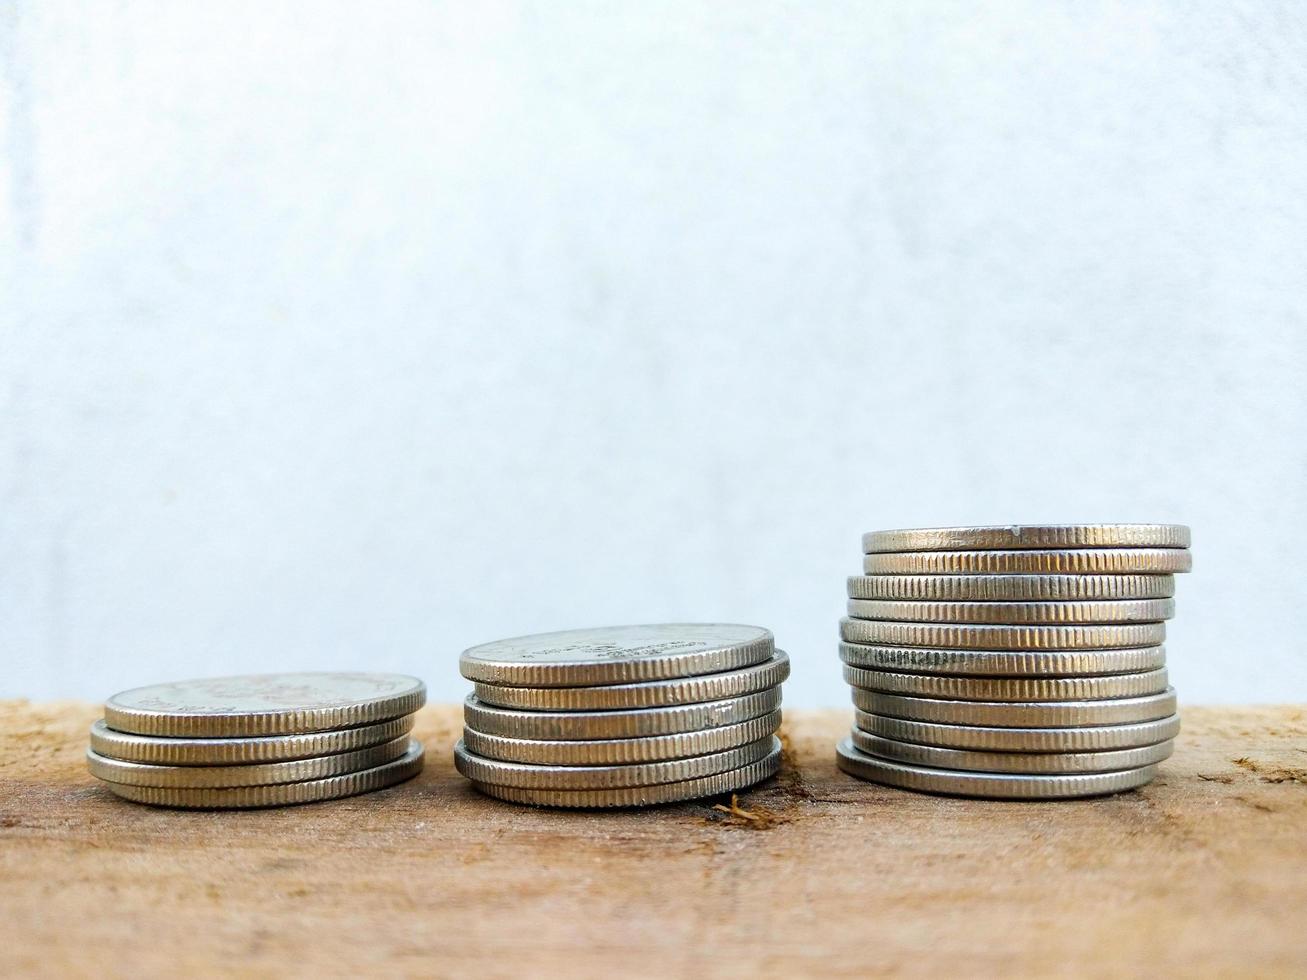 monedas apiladas en la mesa de madera fondo borroso banco finanzas economía negocio plantilla de diseño foto